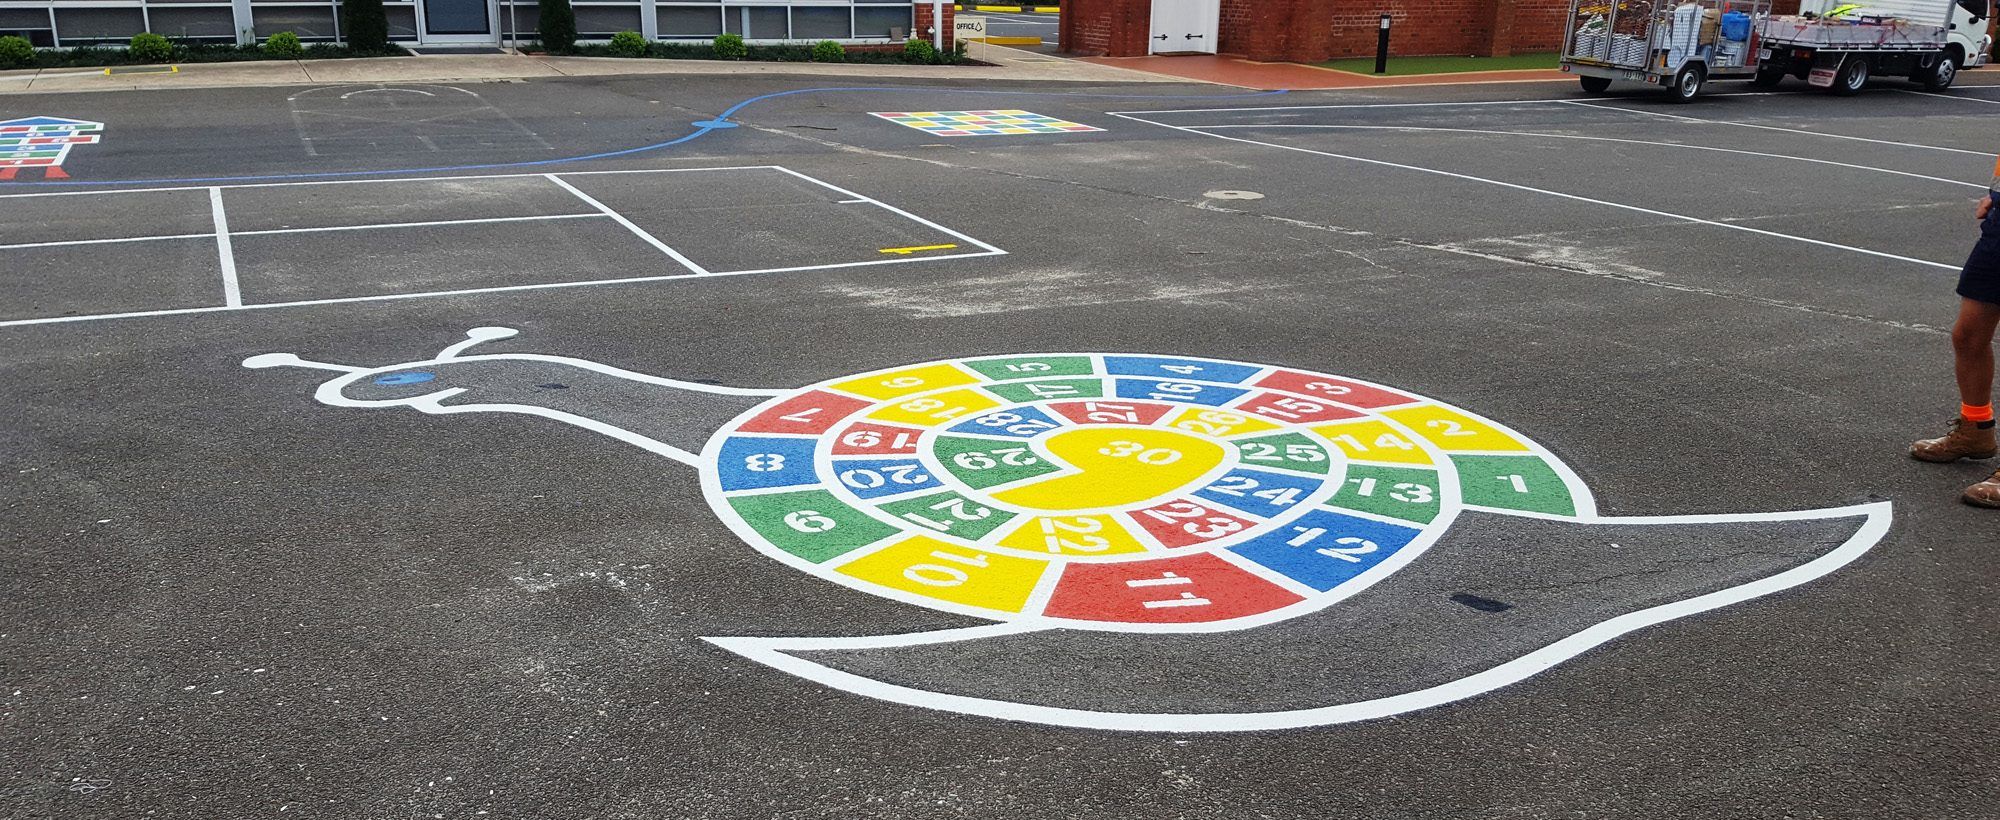 School-Playground-Line-Marking